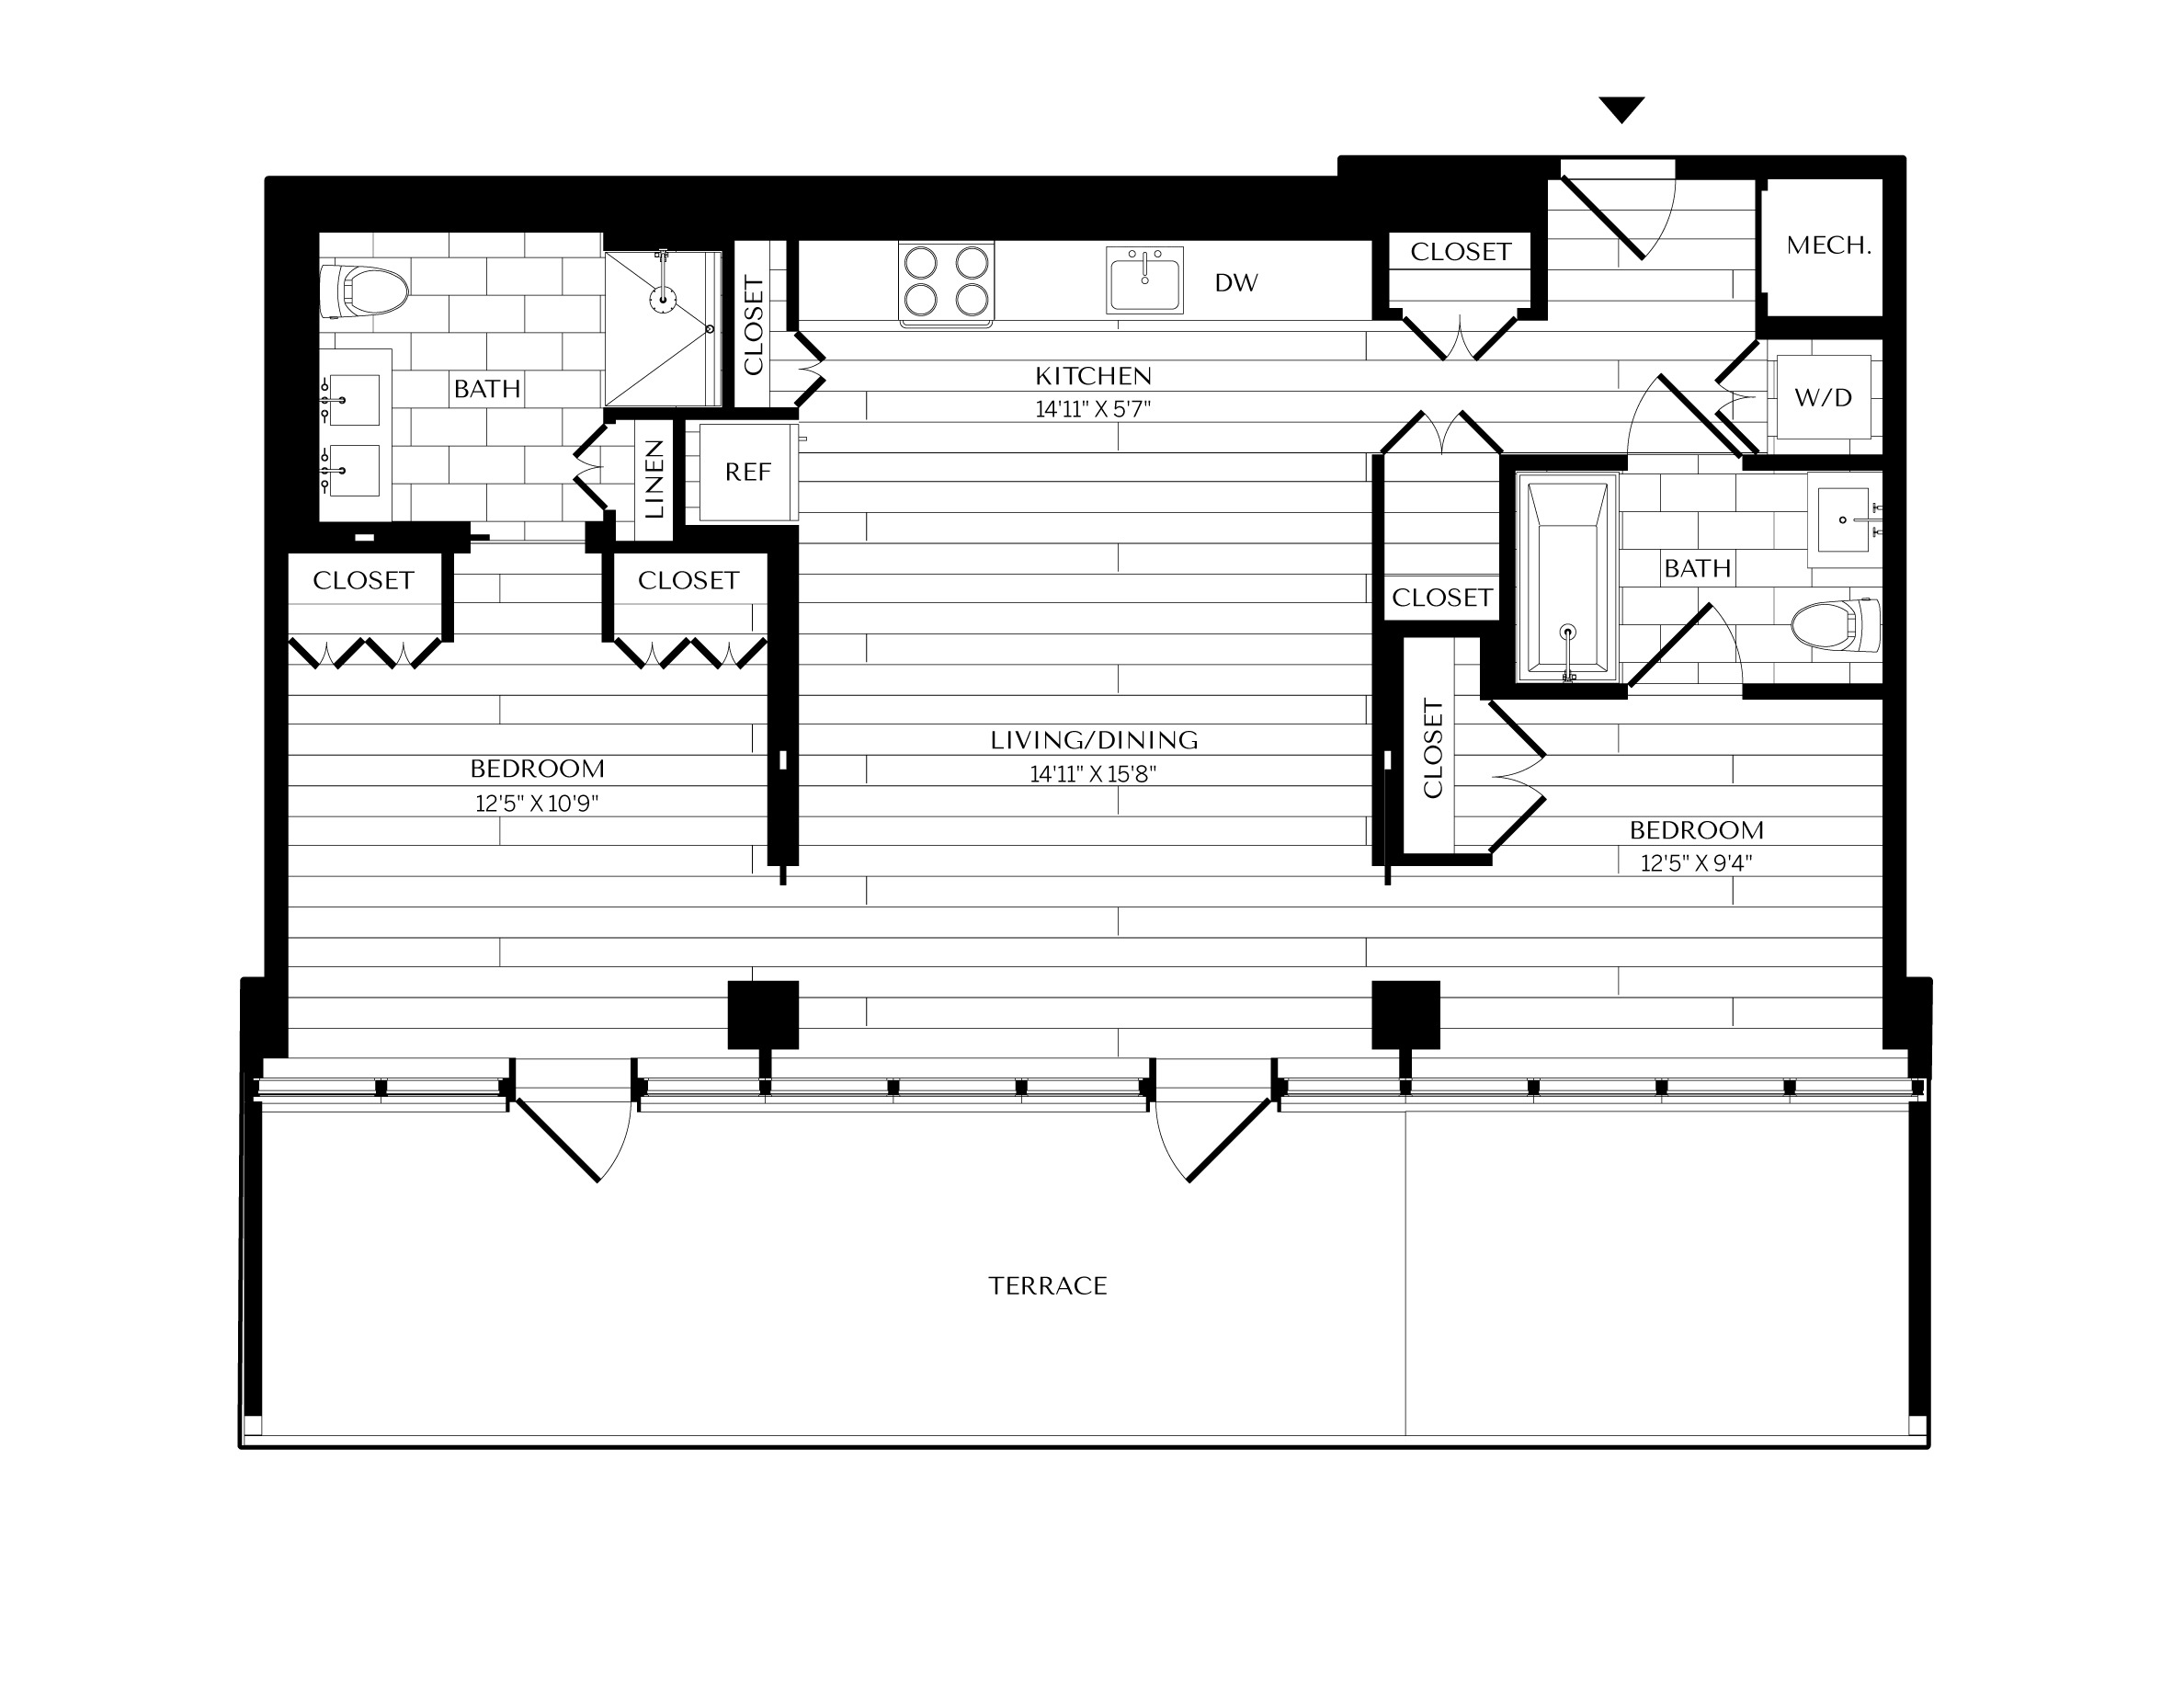 Floorplan image of unit 1202